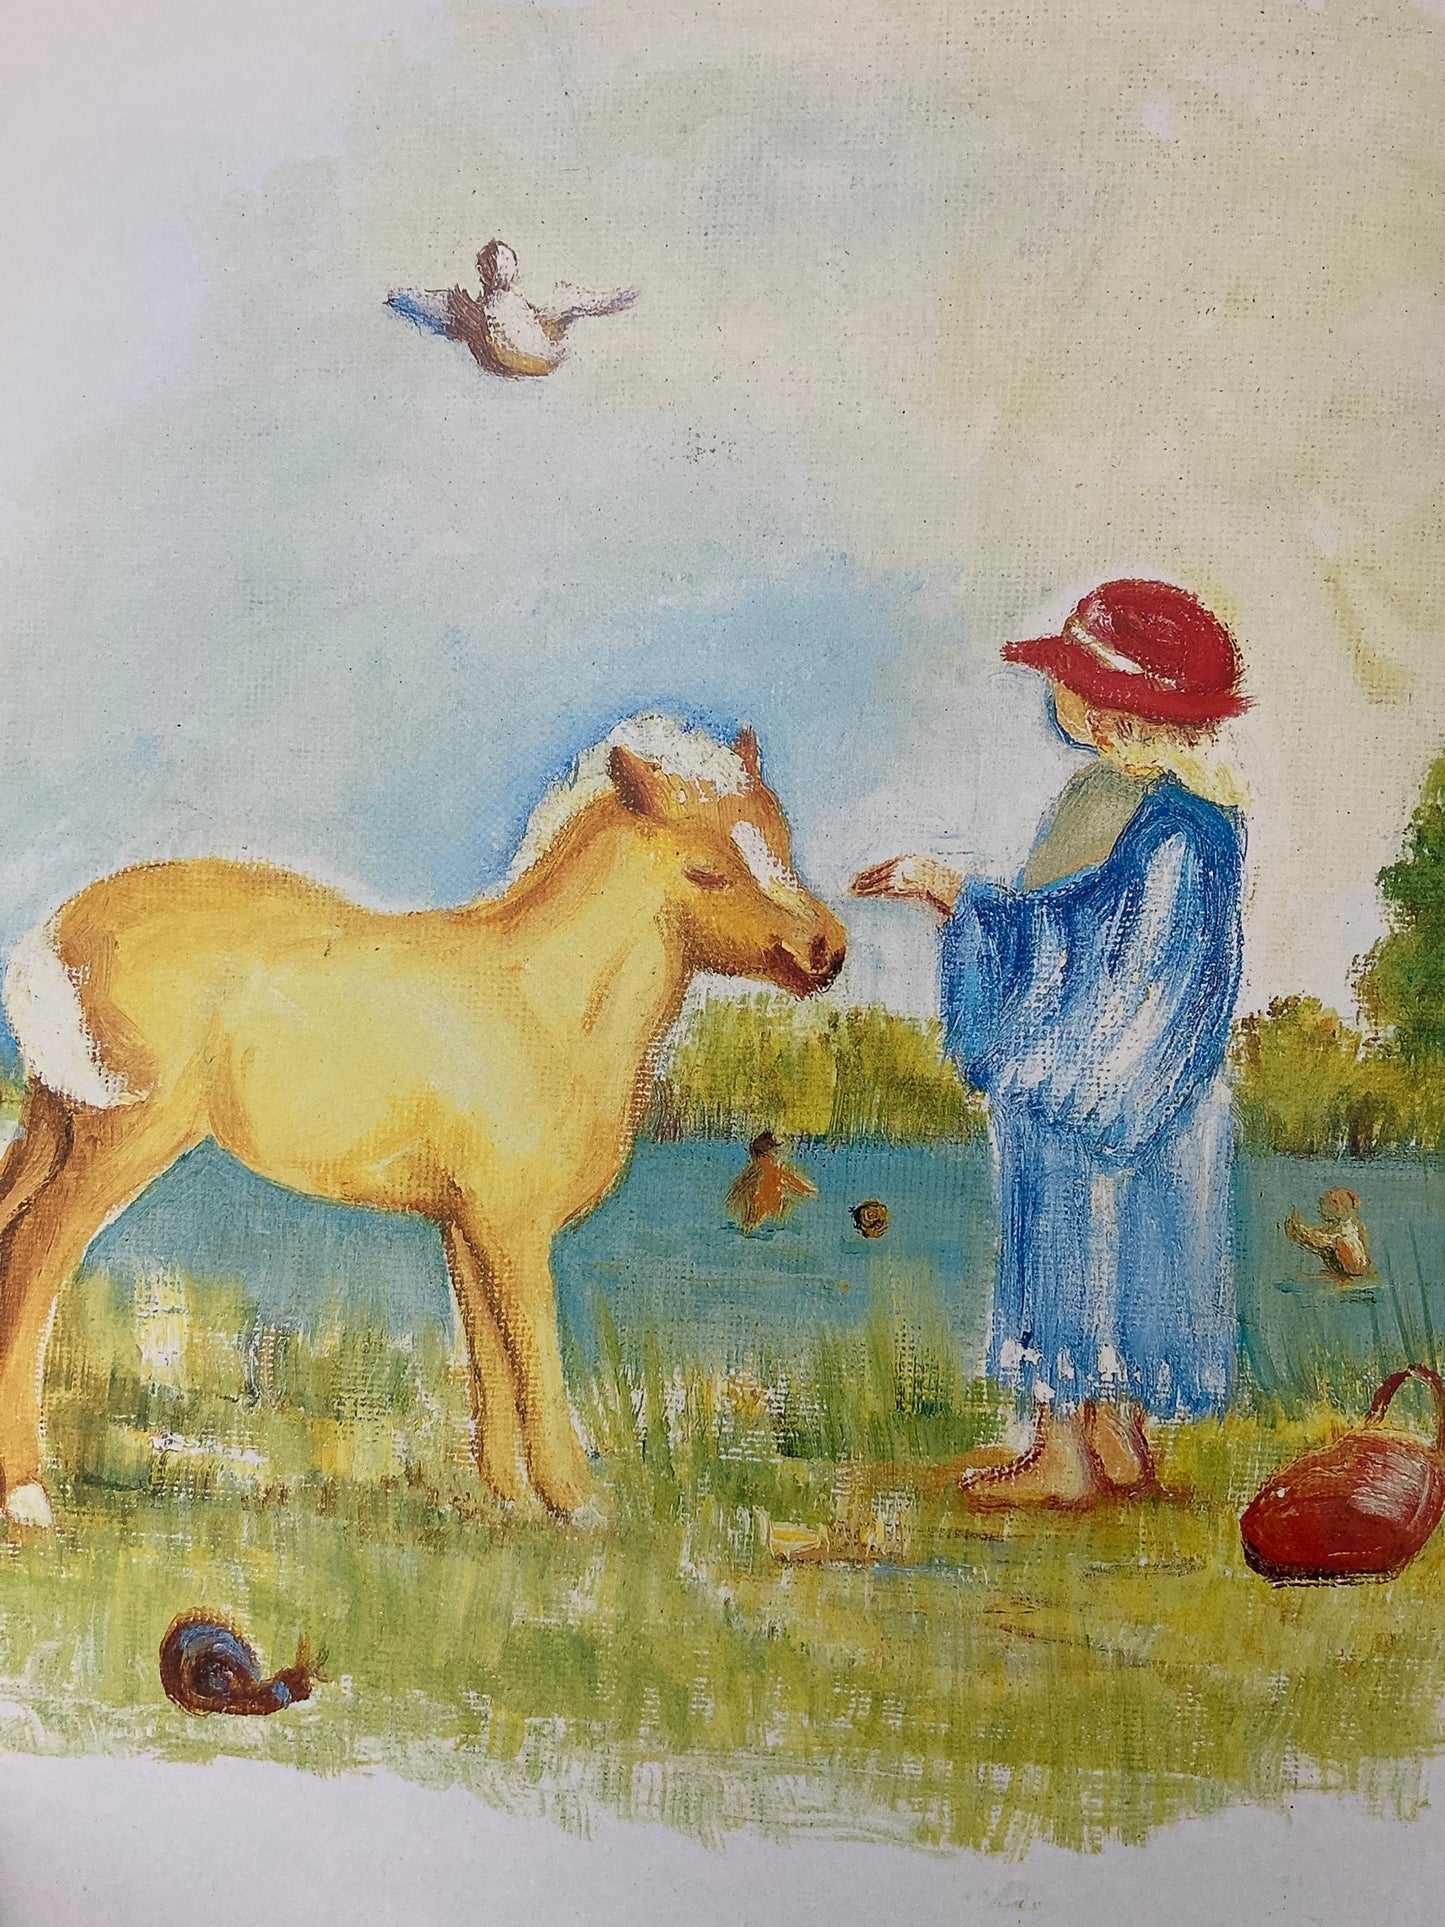 Livre d'images pour enfants - Artistes peignant la bouche et les pieds, 2 titres au choix : KINKI THE CHEEKY COLT. Les amis de la cabane dans les arbres d'Olivier.